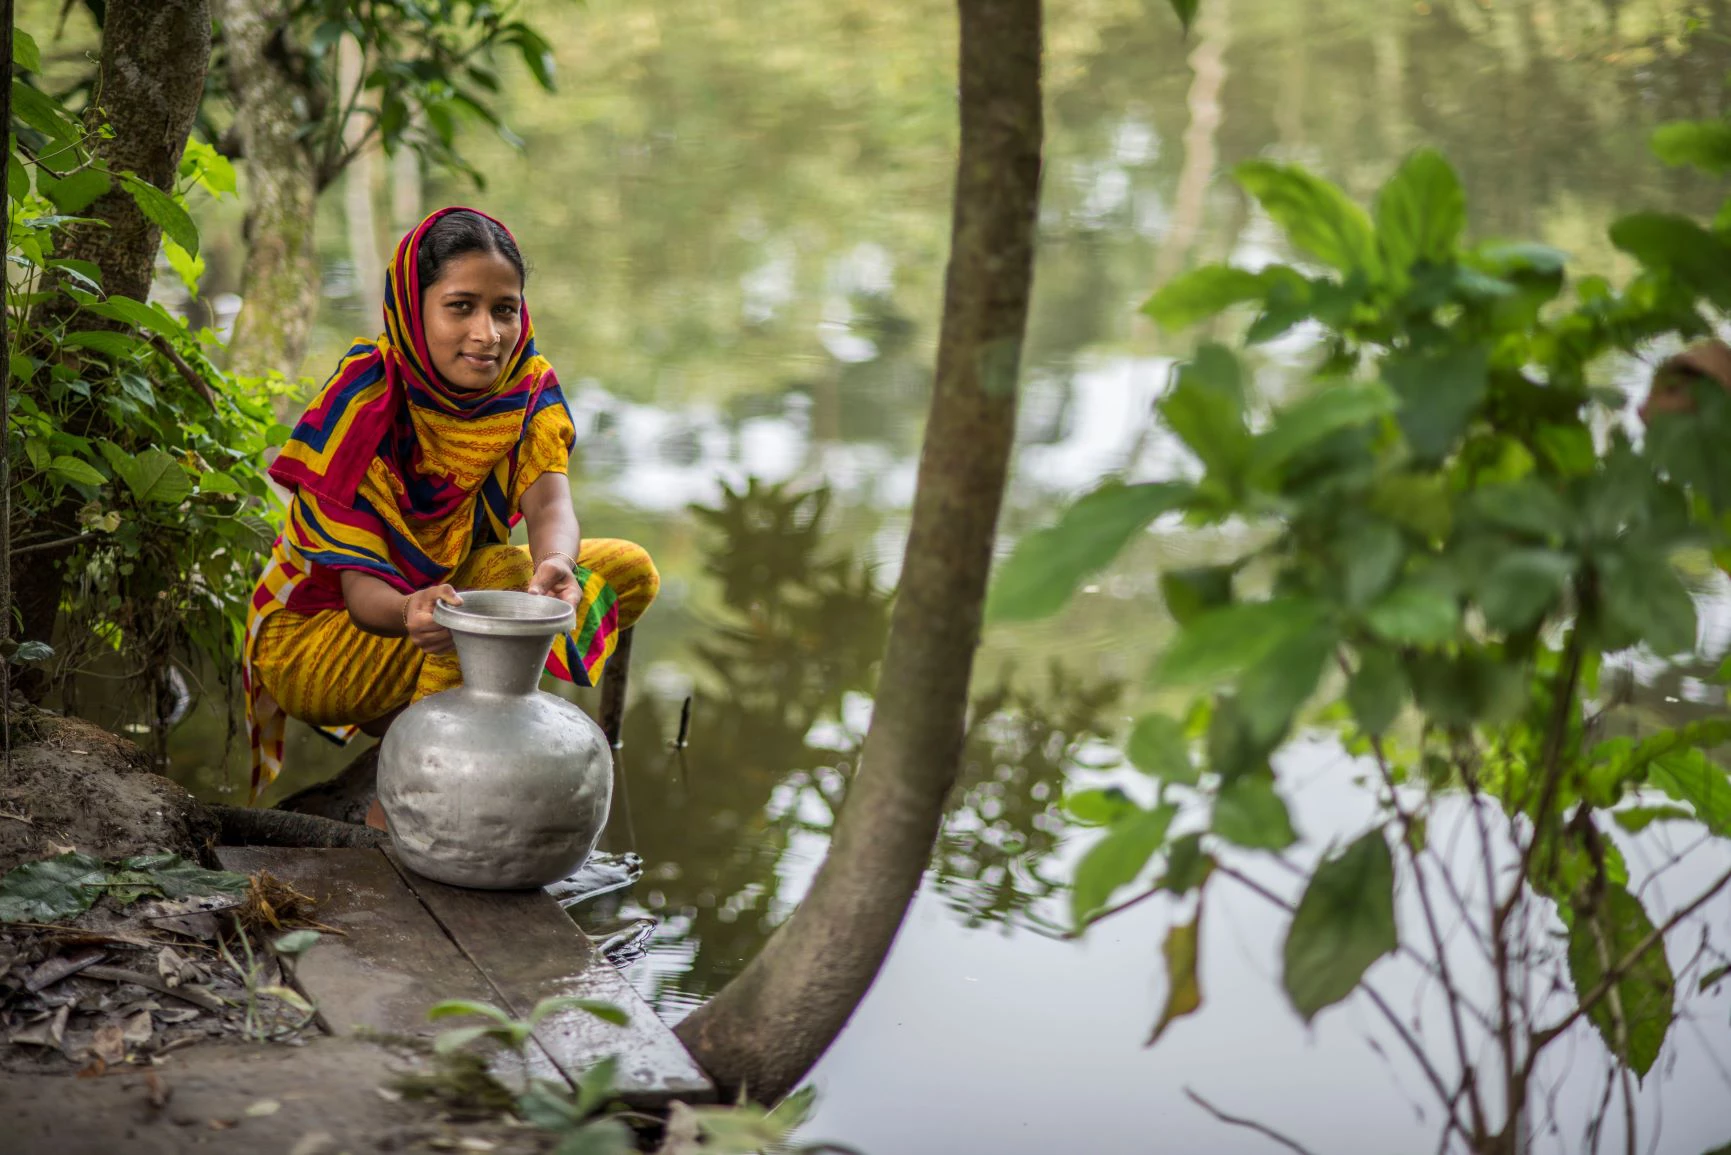 rural Bangladesh woman near a pond